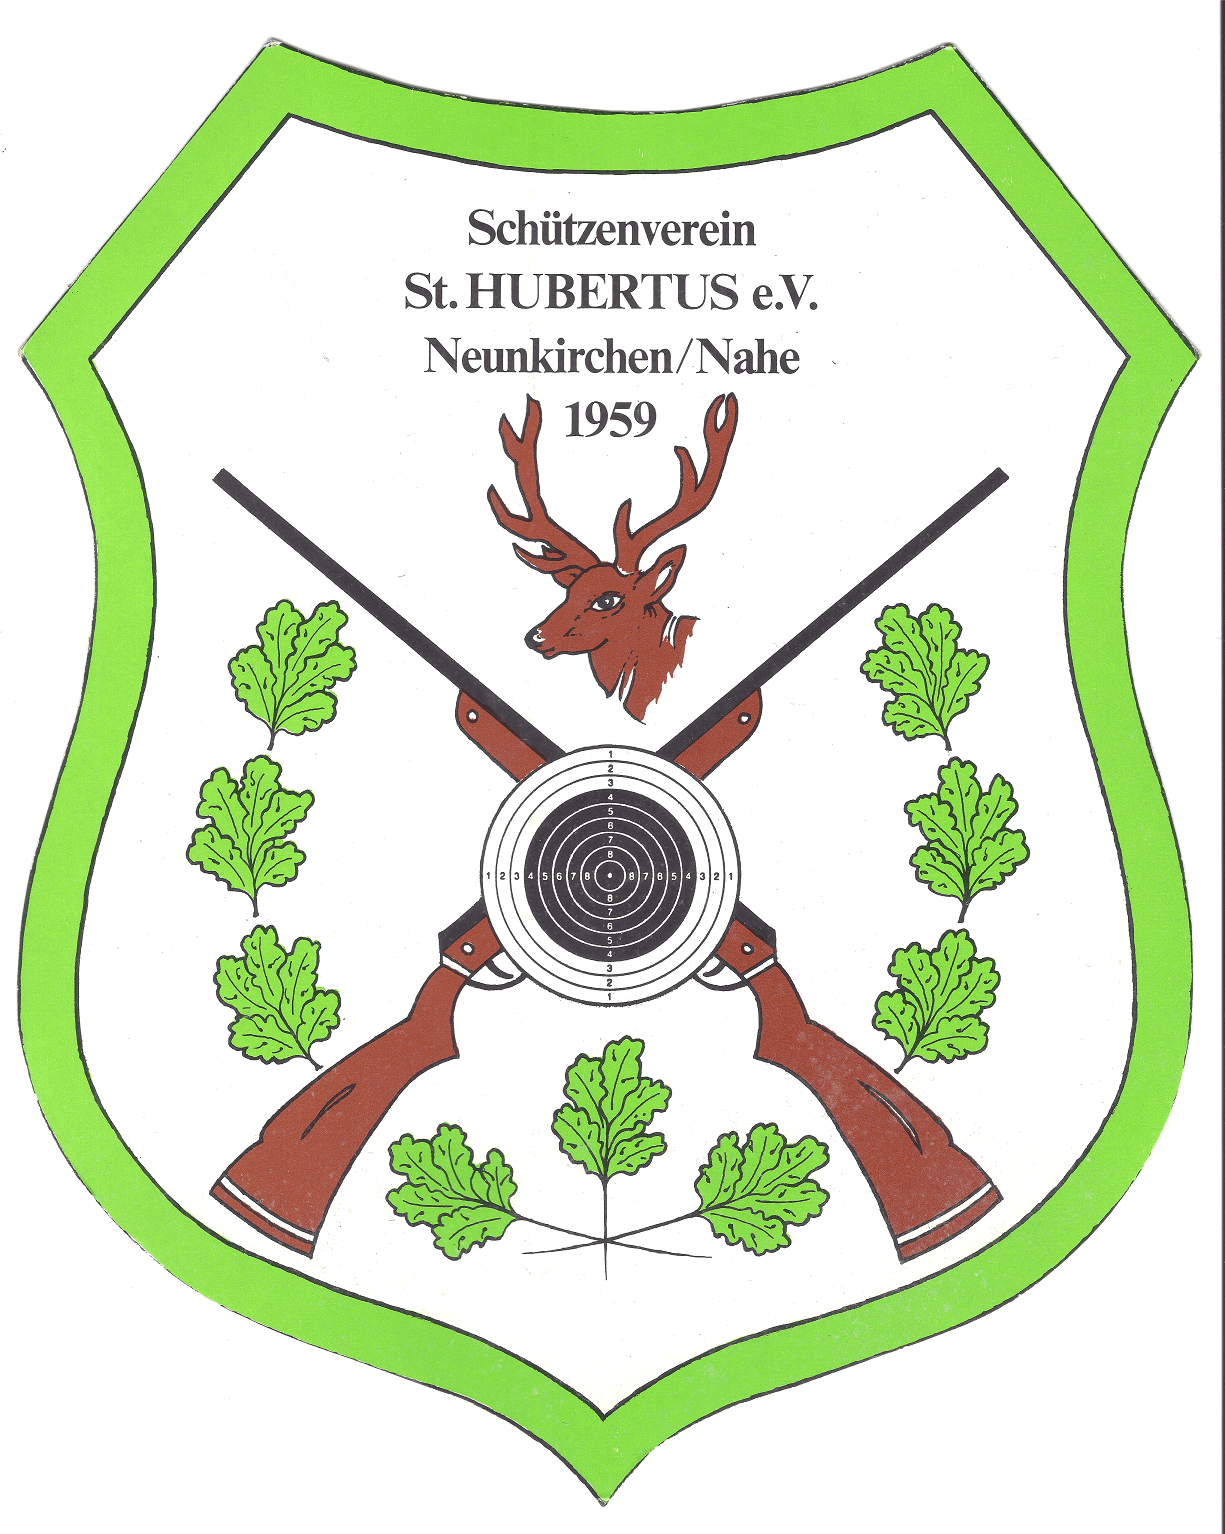 Profilbild des Vereins Schützenverein "St. Hubertus" e.V. Neunkirchen/Nahe